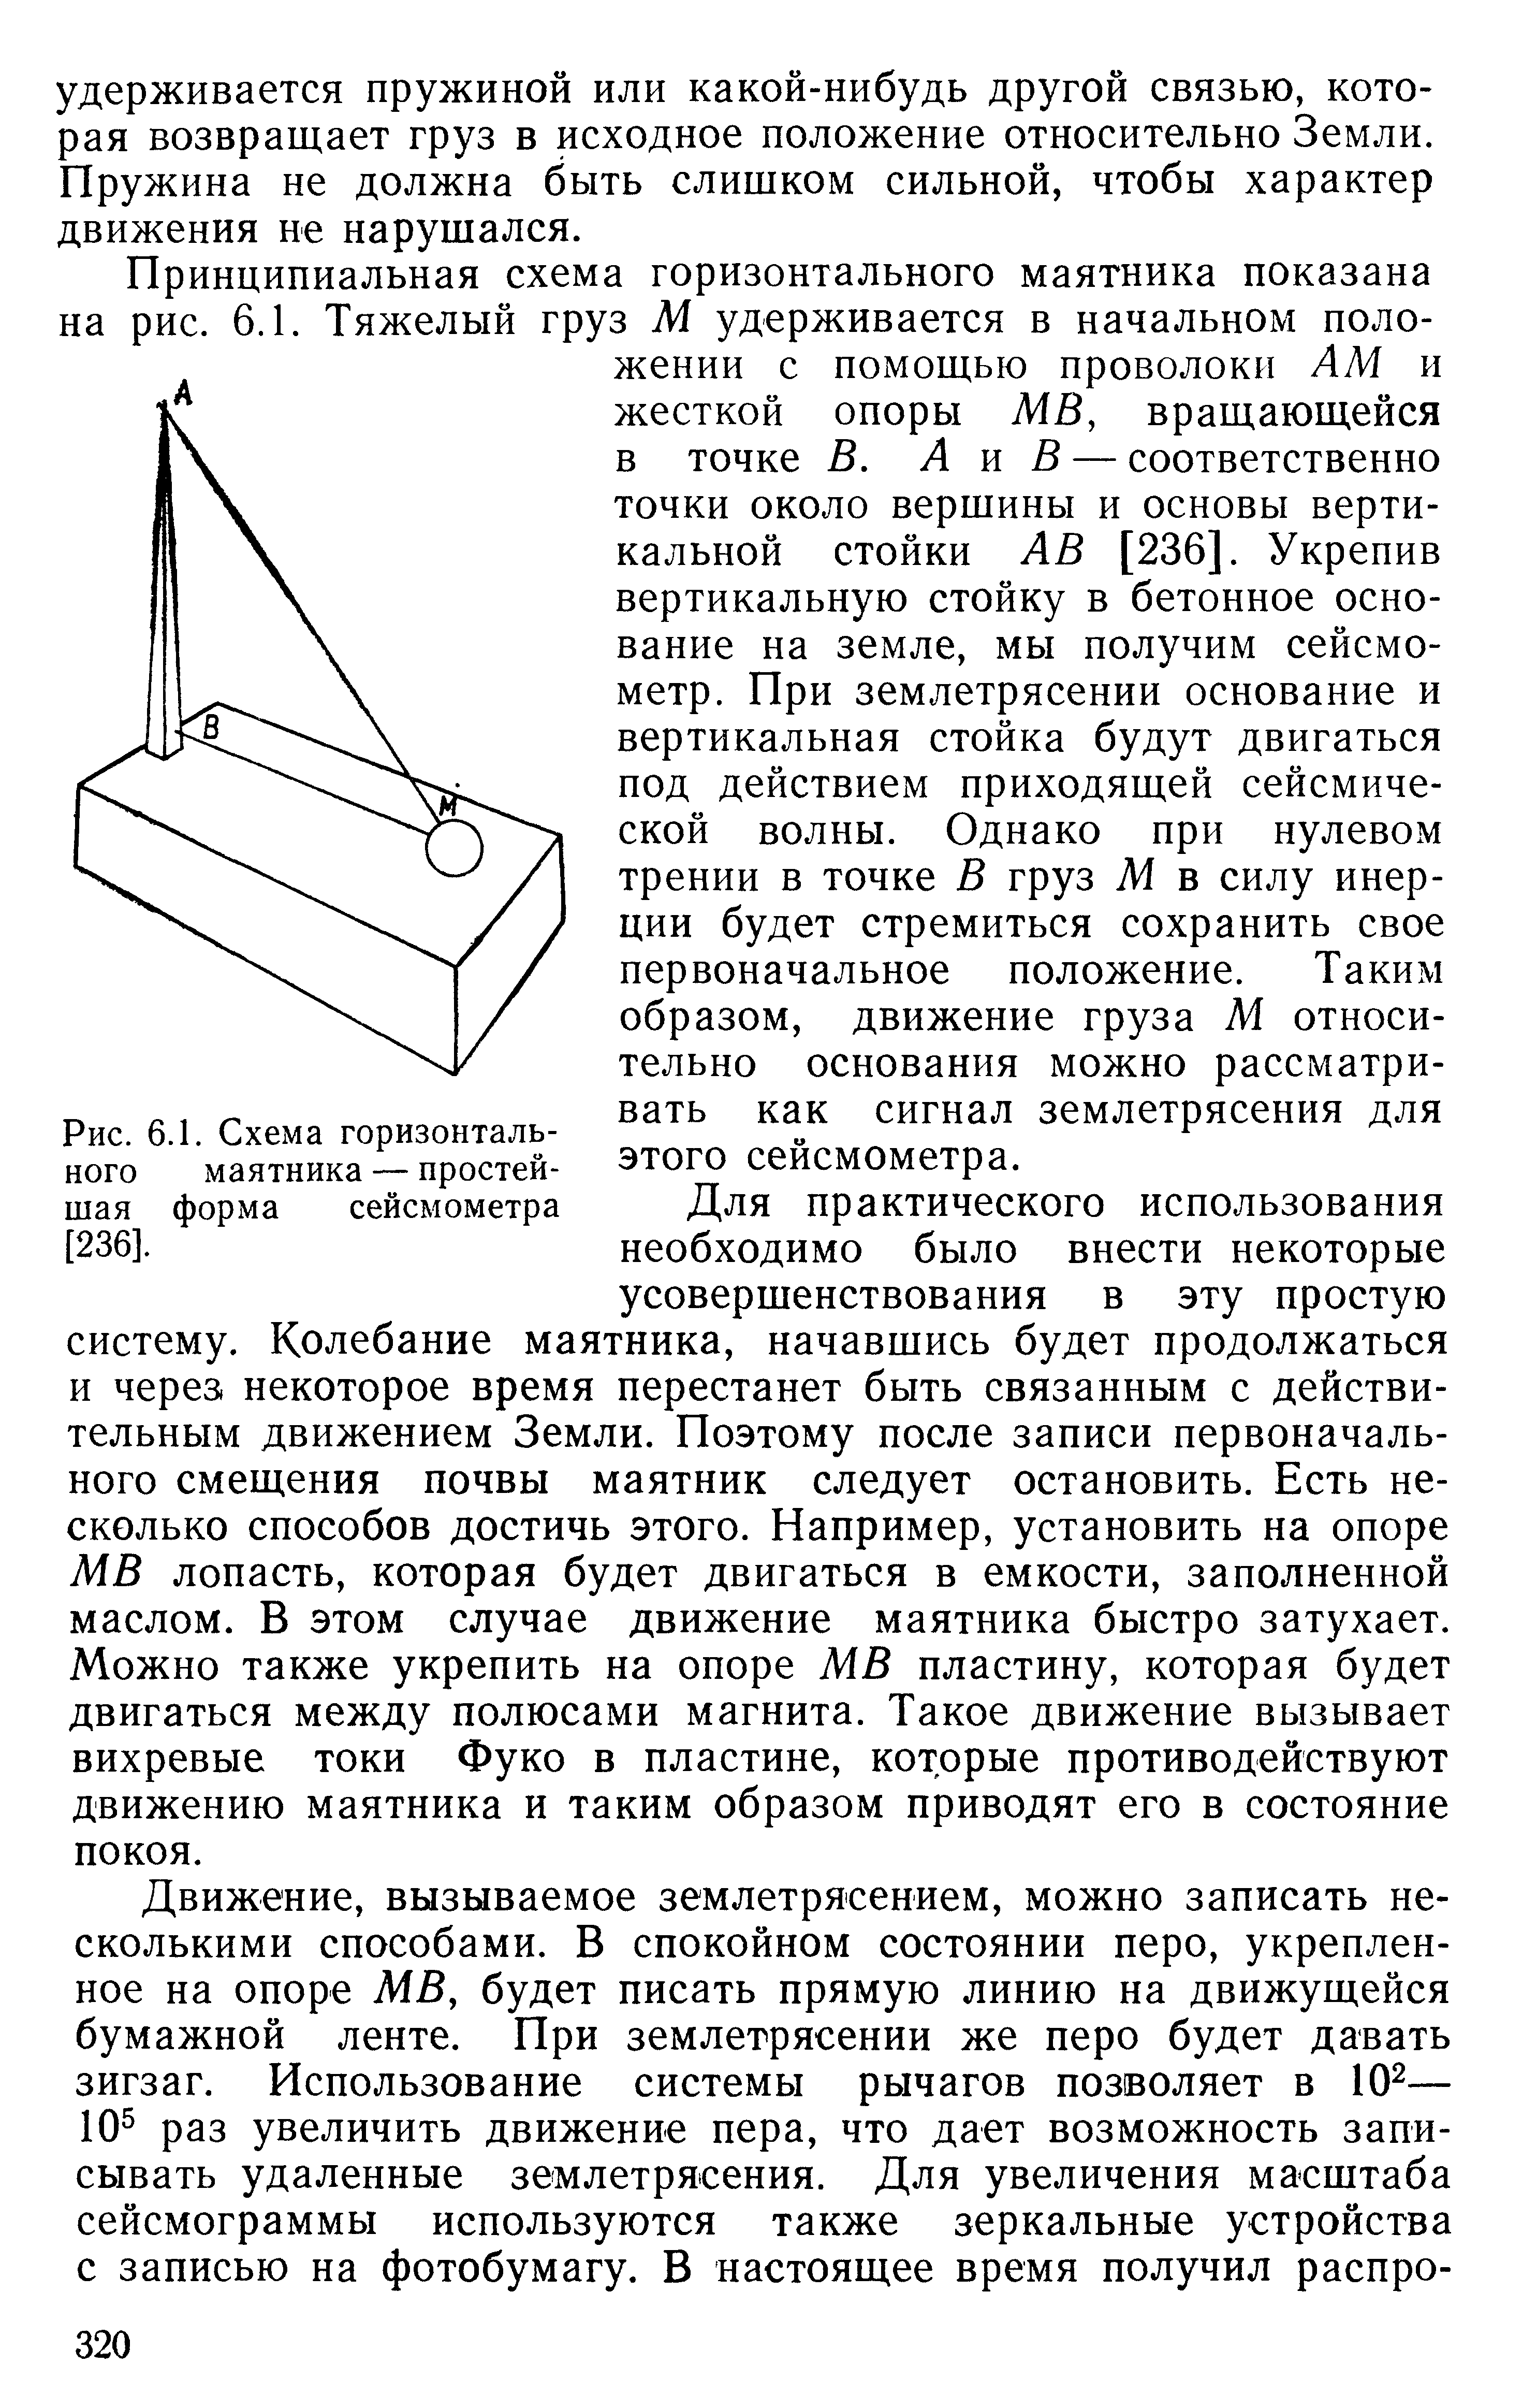 Рис. 6.1. Схема горизонтального маятника — простейшая форма сейсмометра [236].
